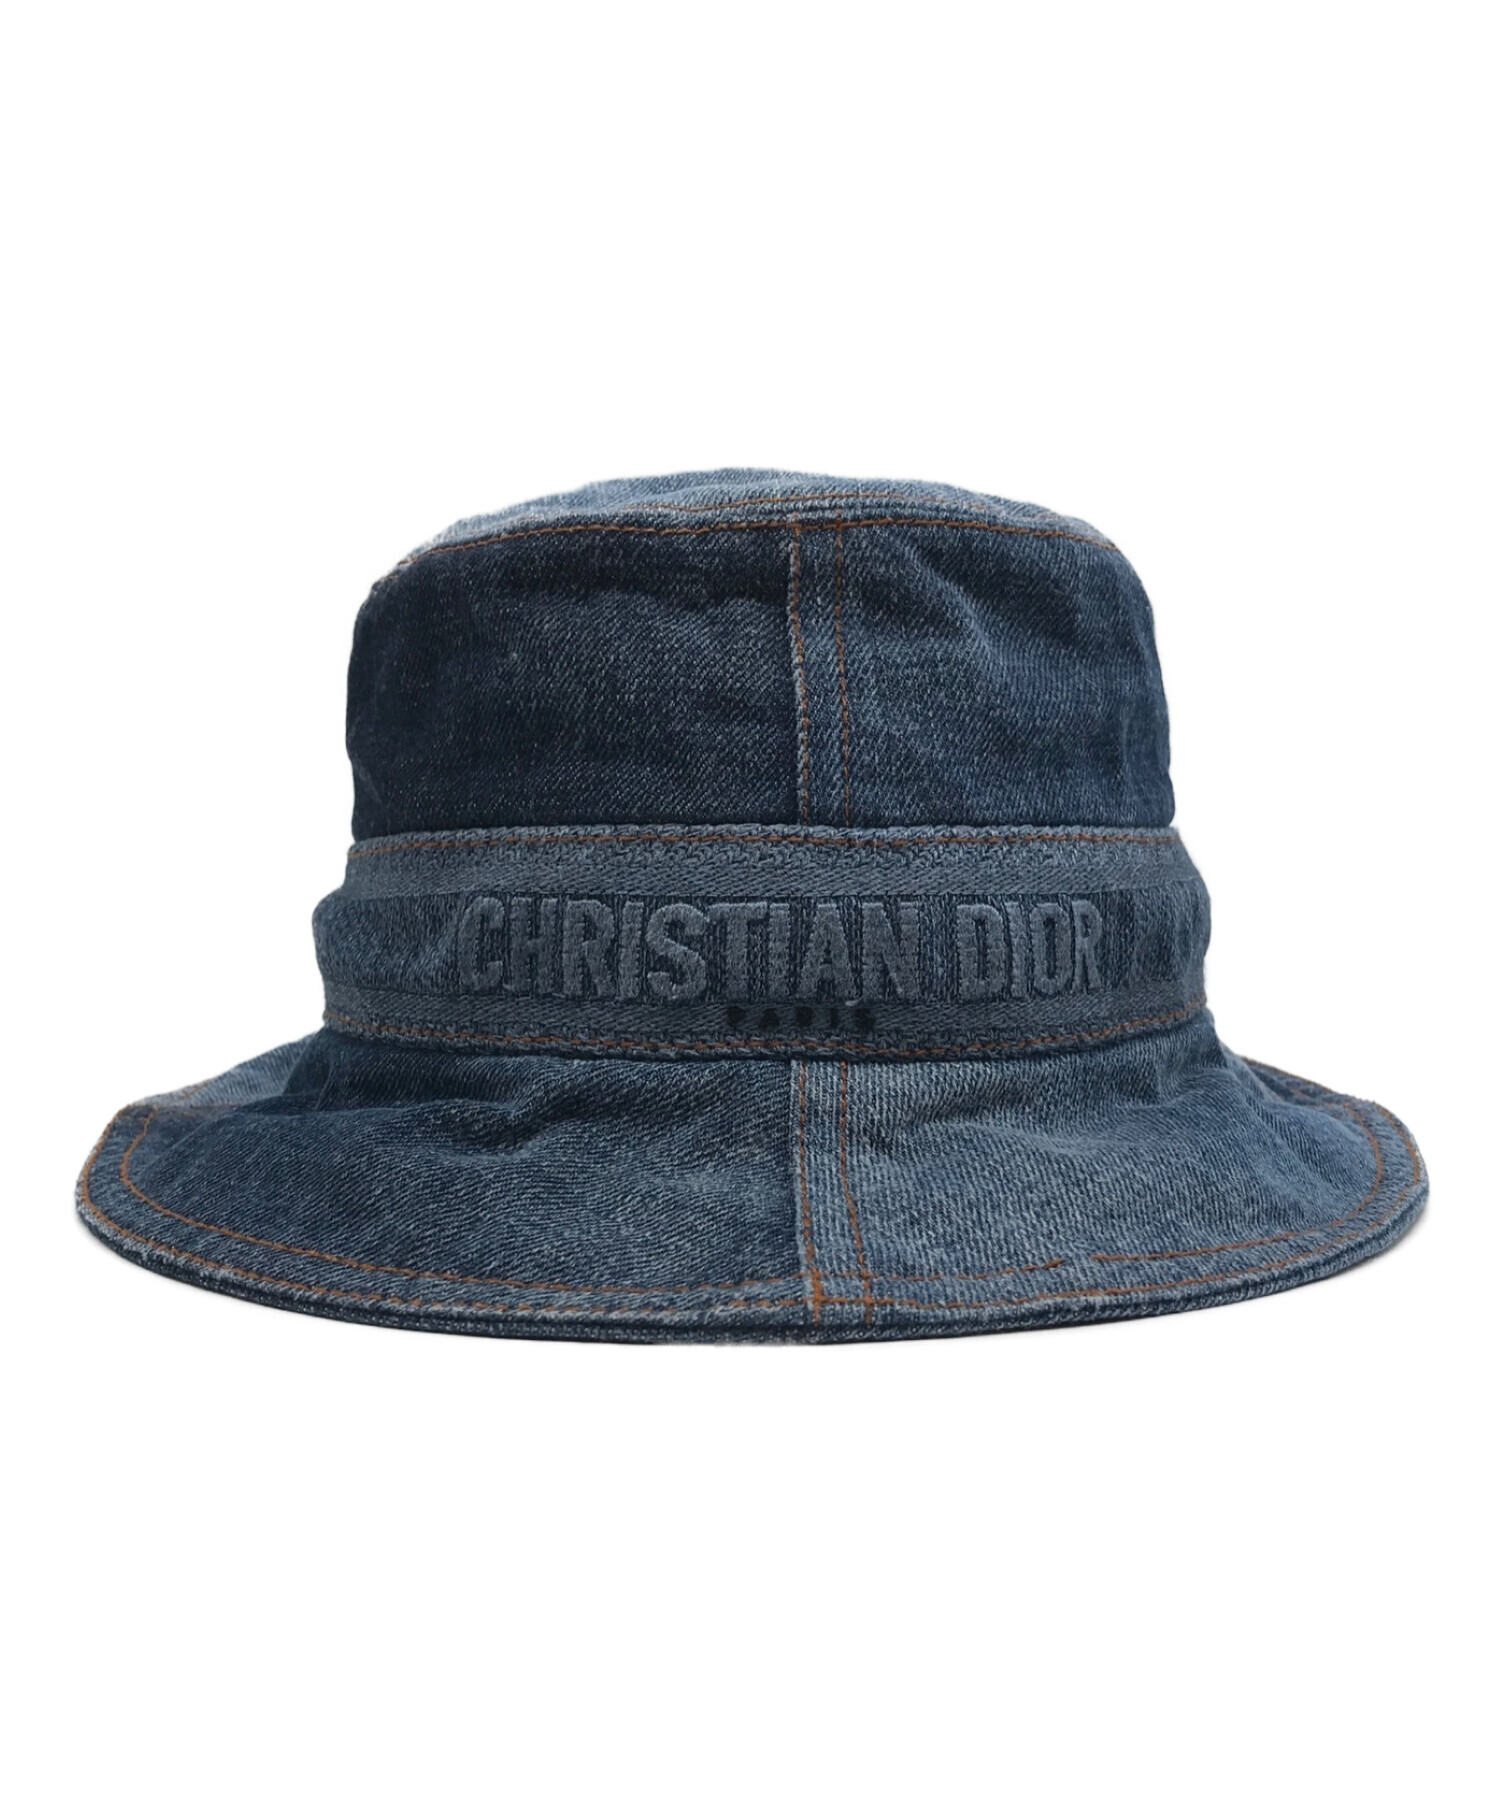 Christian Dior (クリスチャン ディオール) デニムバケットハット インディゴ サイズ:57